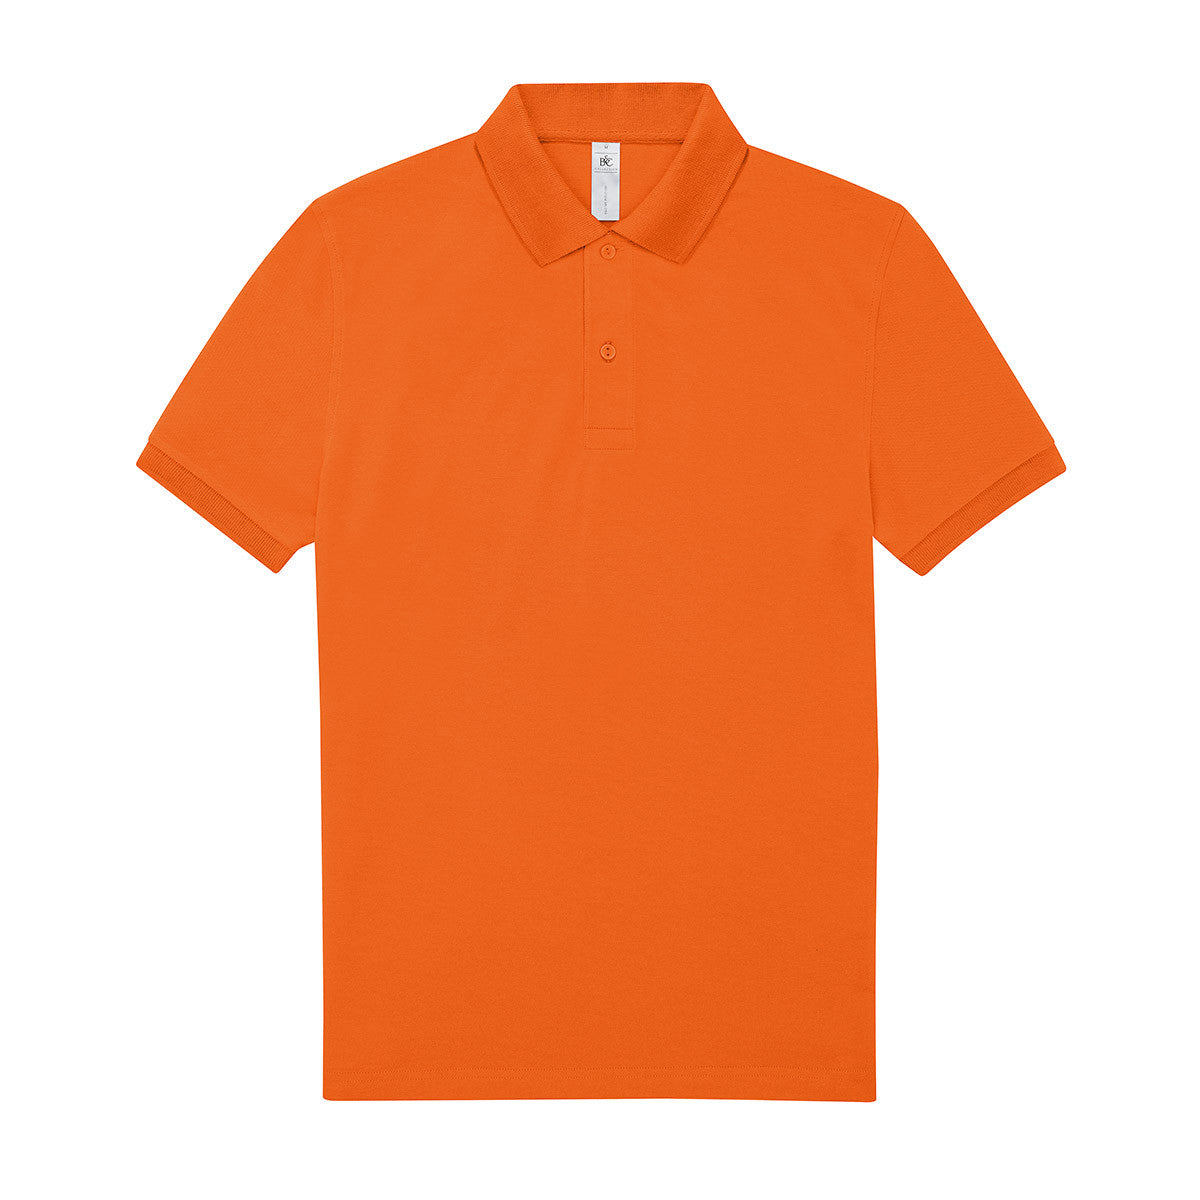 Premium Poloshirt 180 (Men/ Unisex)